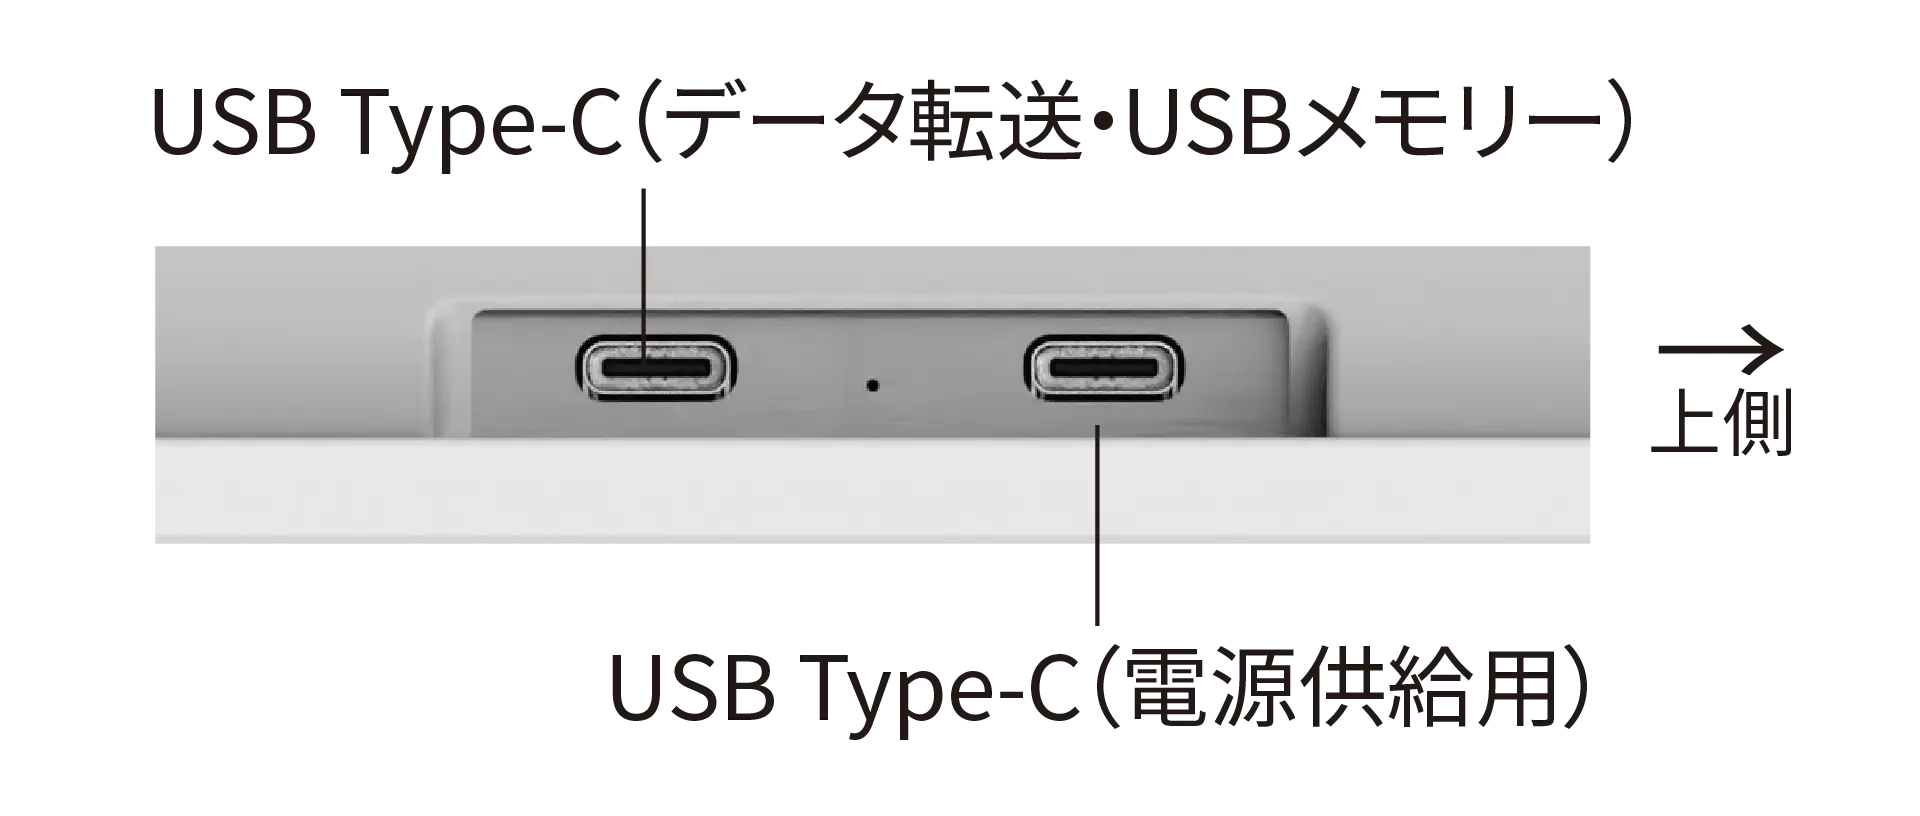 接続端子部分の写真：データ転送用と電源供給用のUSB Type-Cポートがそれぞれ一つづつあります。